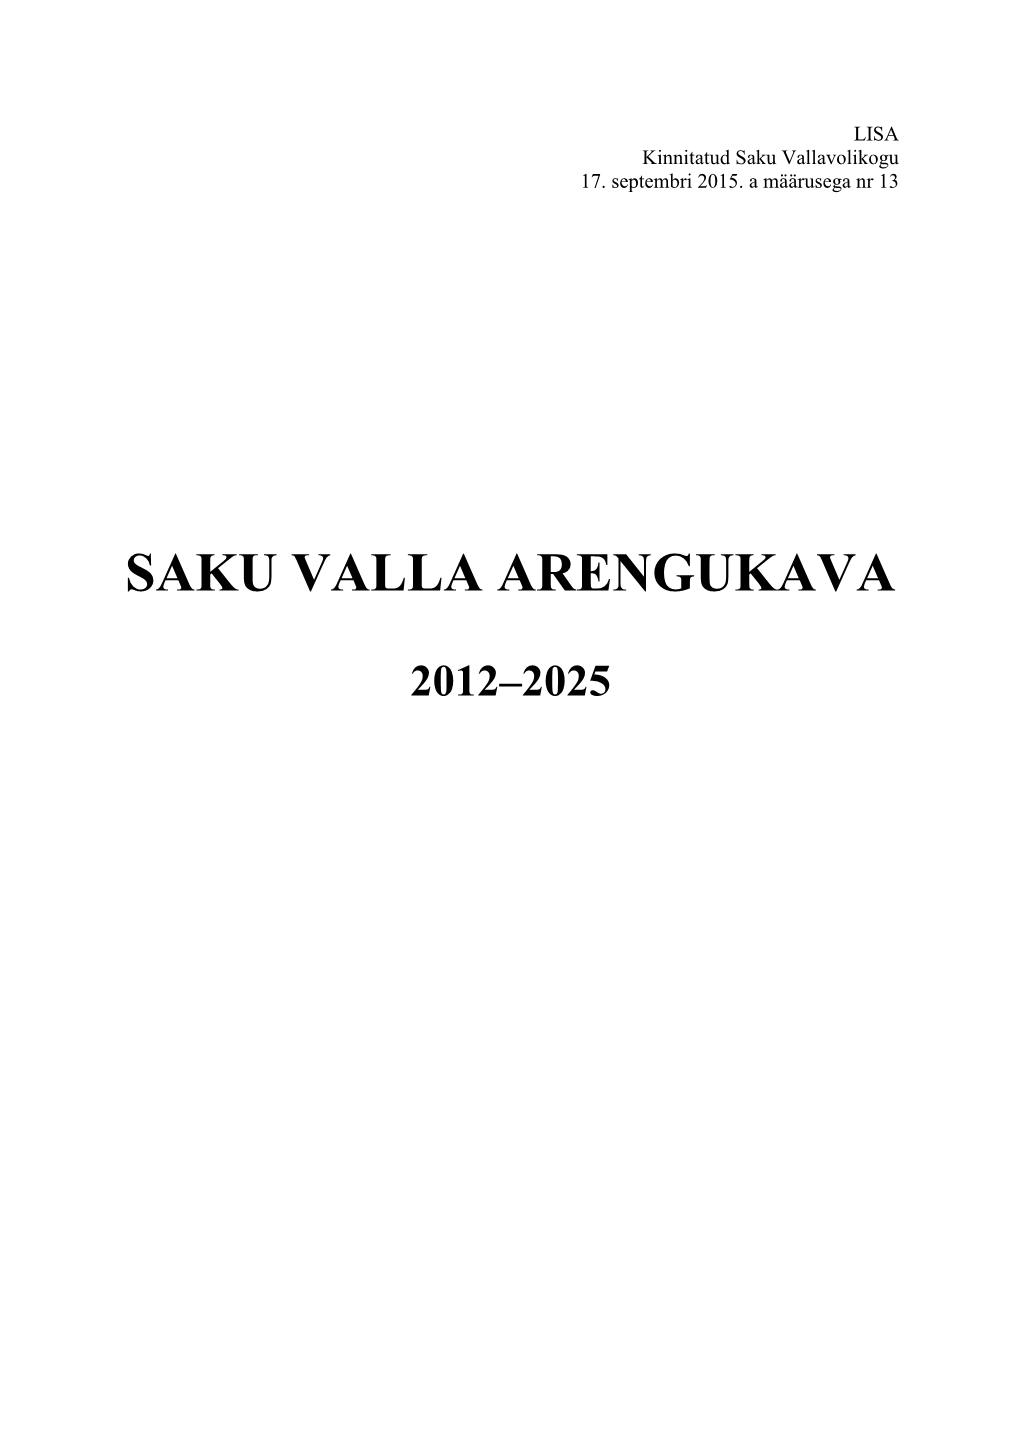 Saku Valla Arengukava 2011-2025